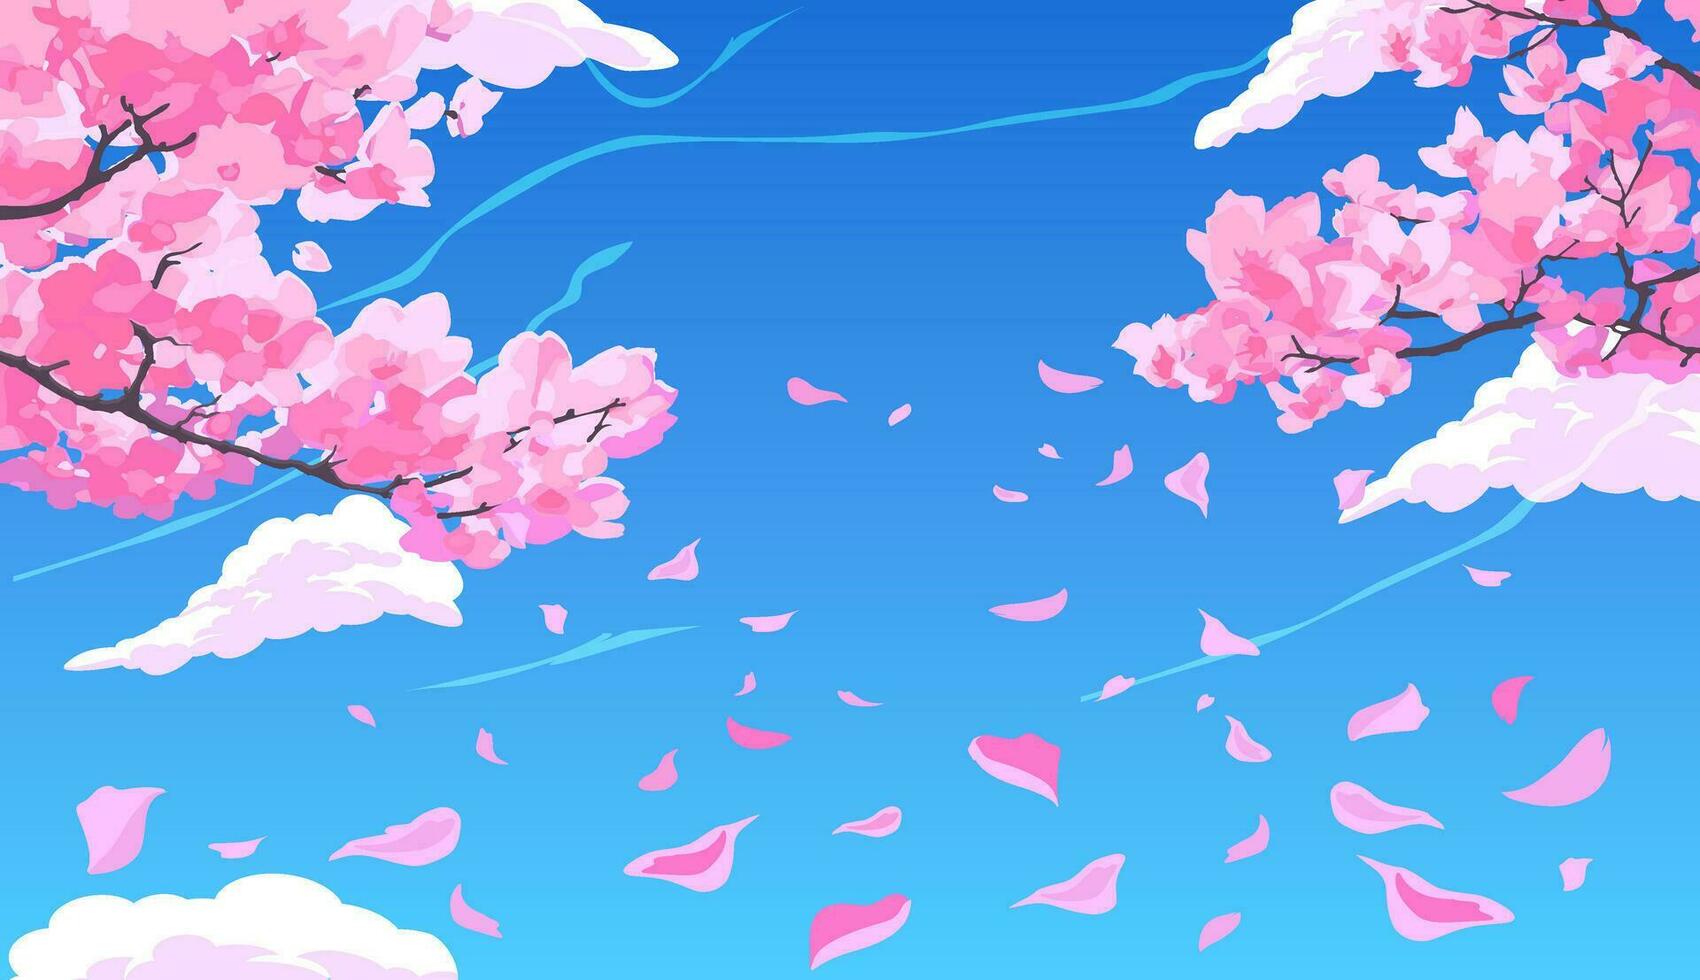 Rosa florescendo sakura cereja galhos com pétalas queda contra a fundo do uma brilhante azul céu com nuvens. vetor